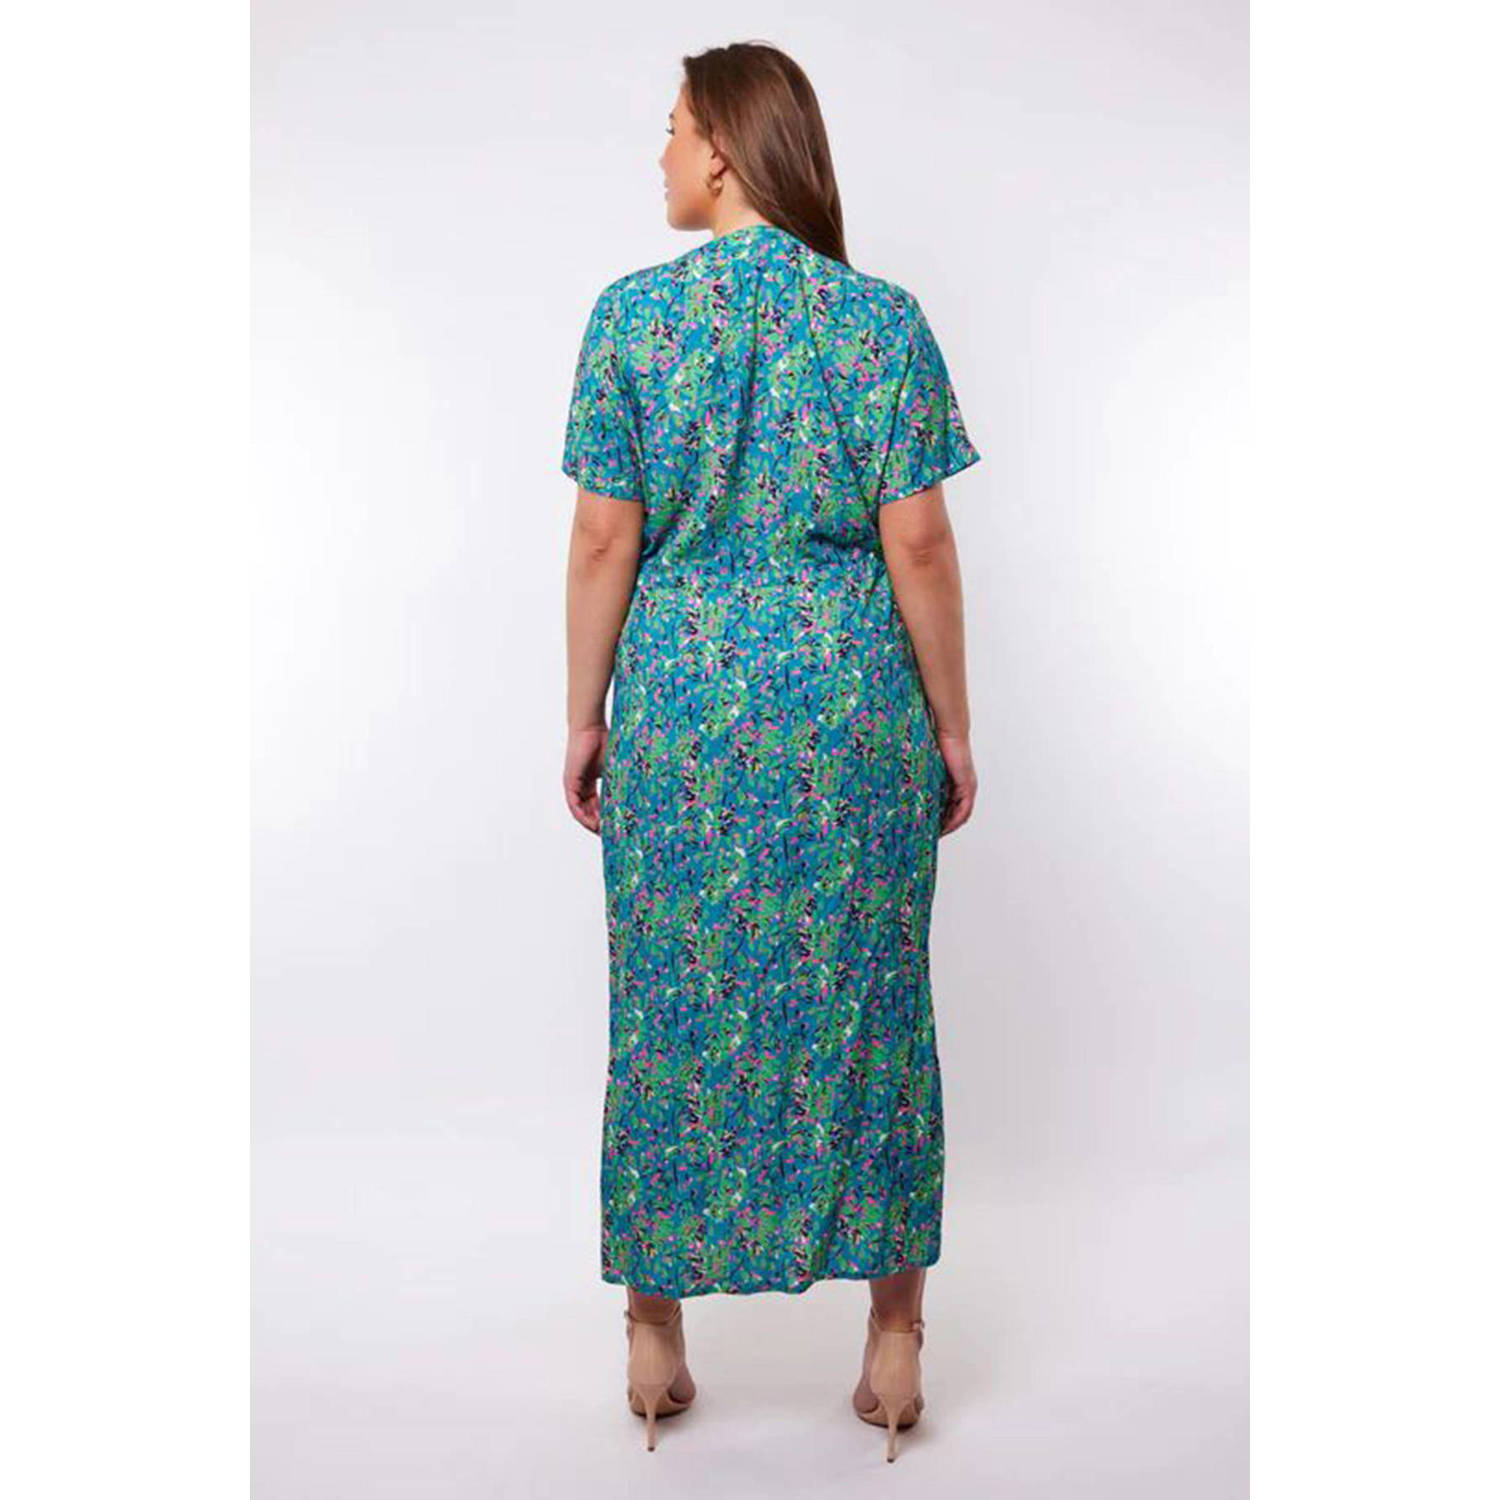 Exxcellent maxi jurk met all over print blauw groen roze